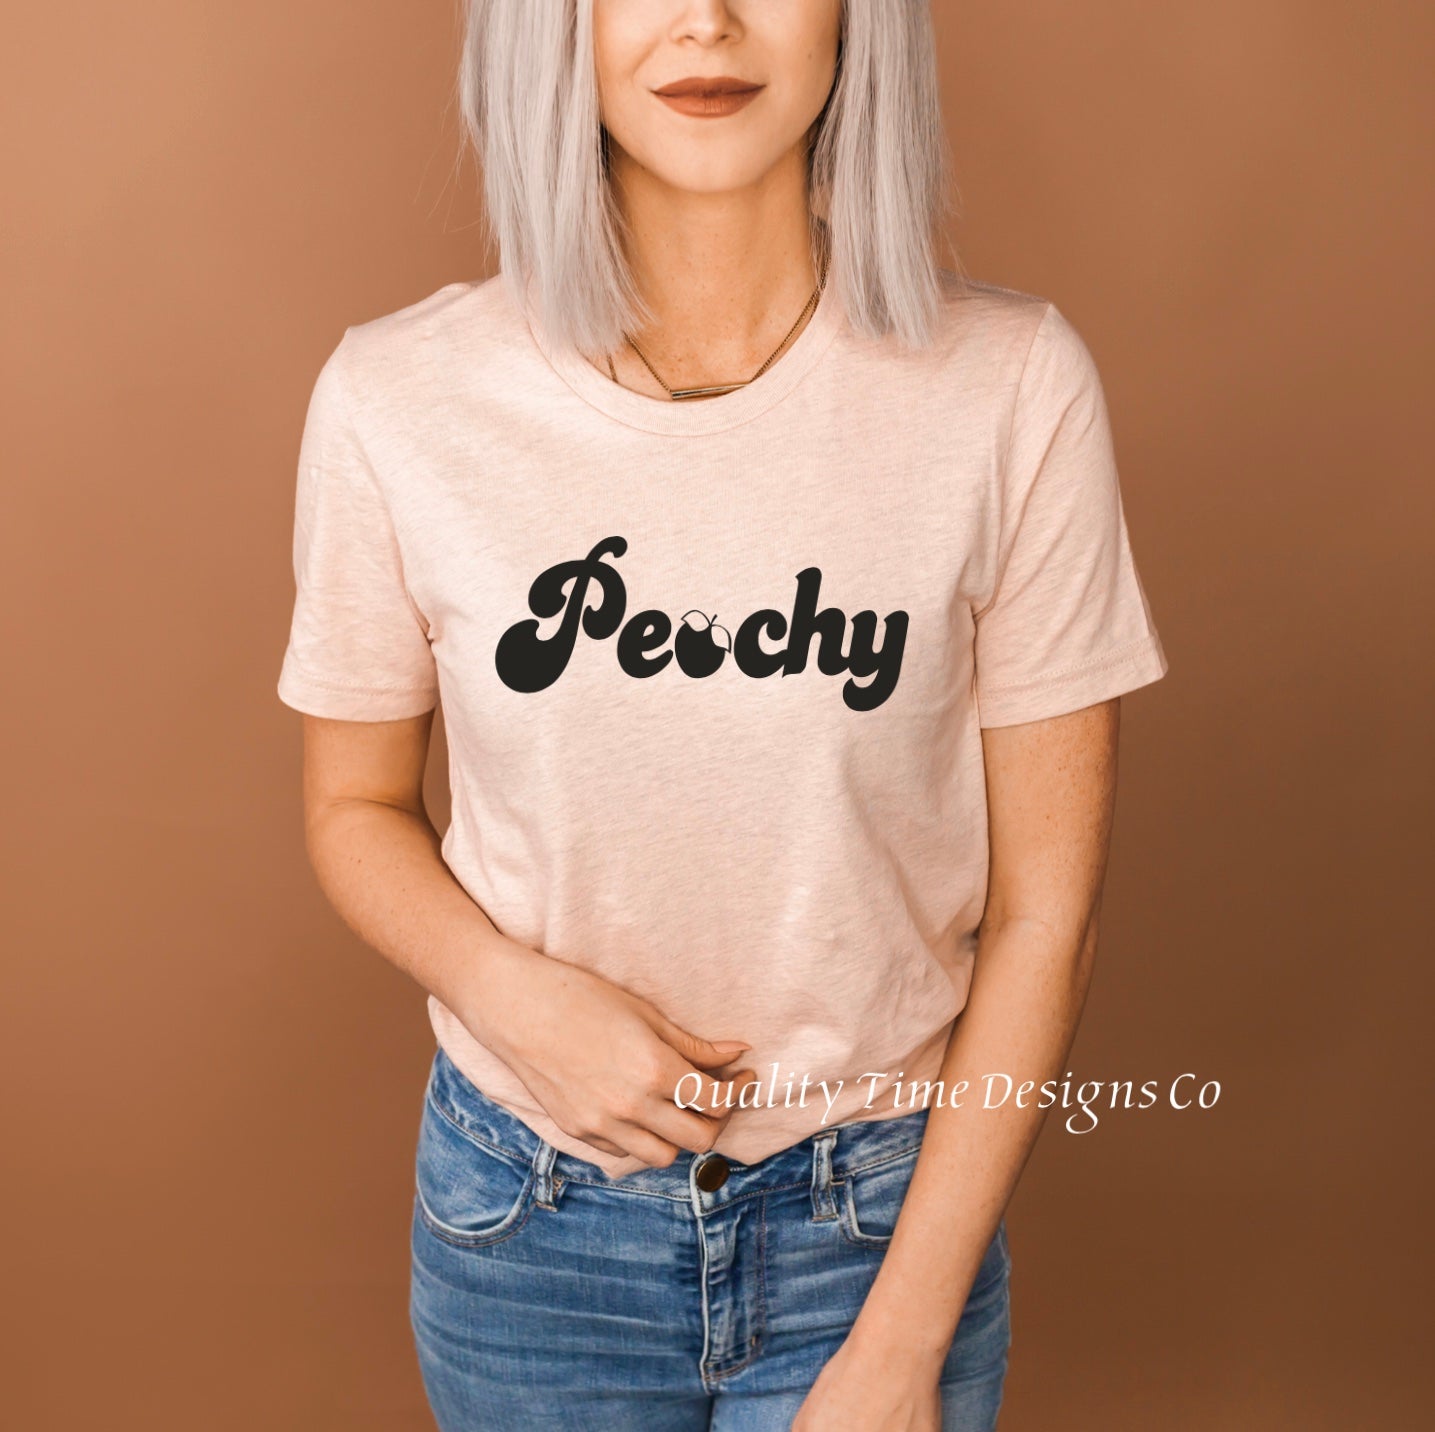 Peachy t-shirt 